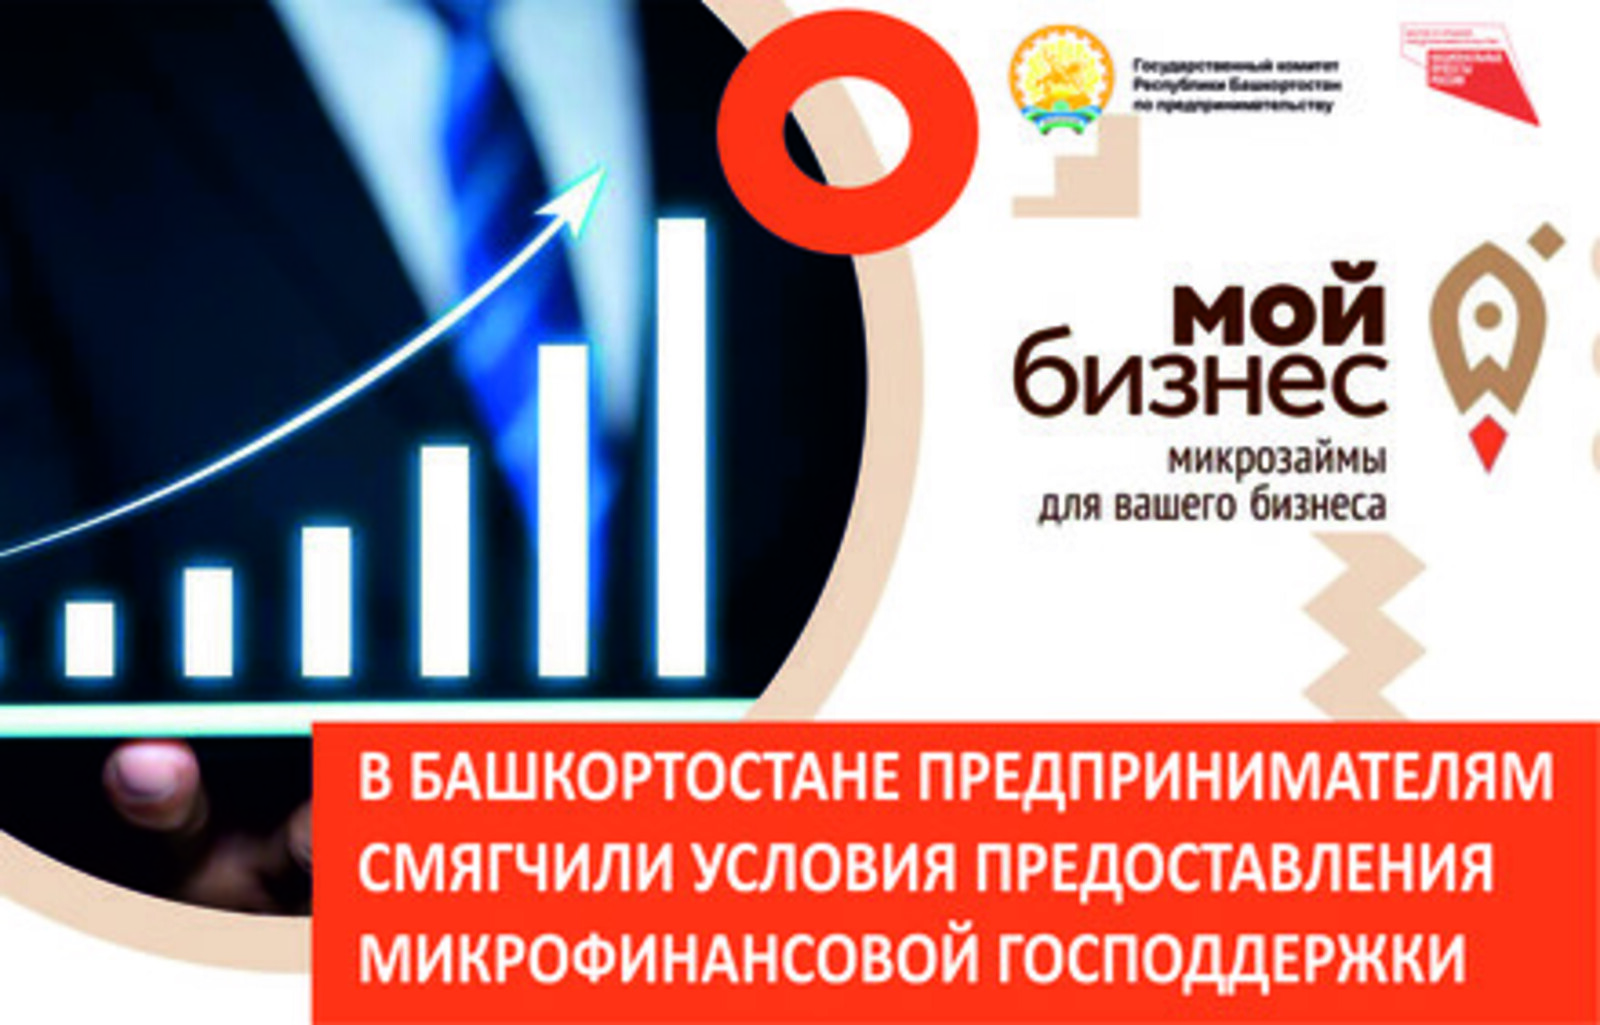 В Башкортостане предпринимателям смягчили условия предоставления государственной микрофинансовой поддержки